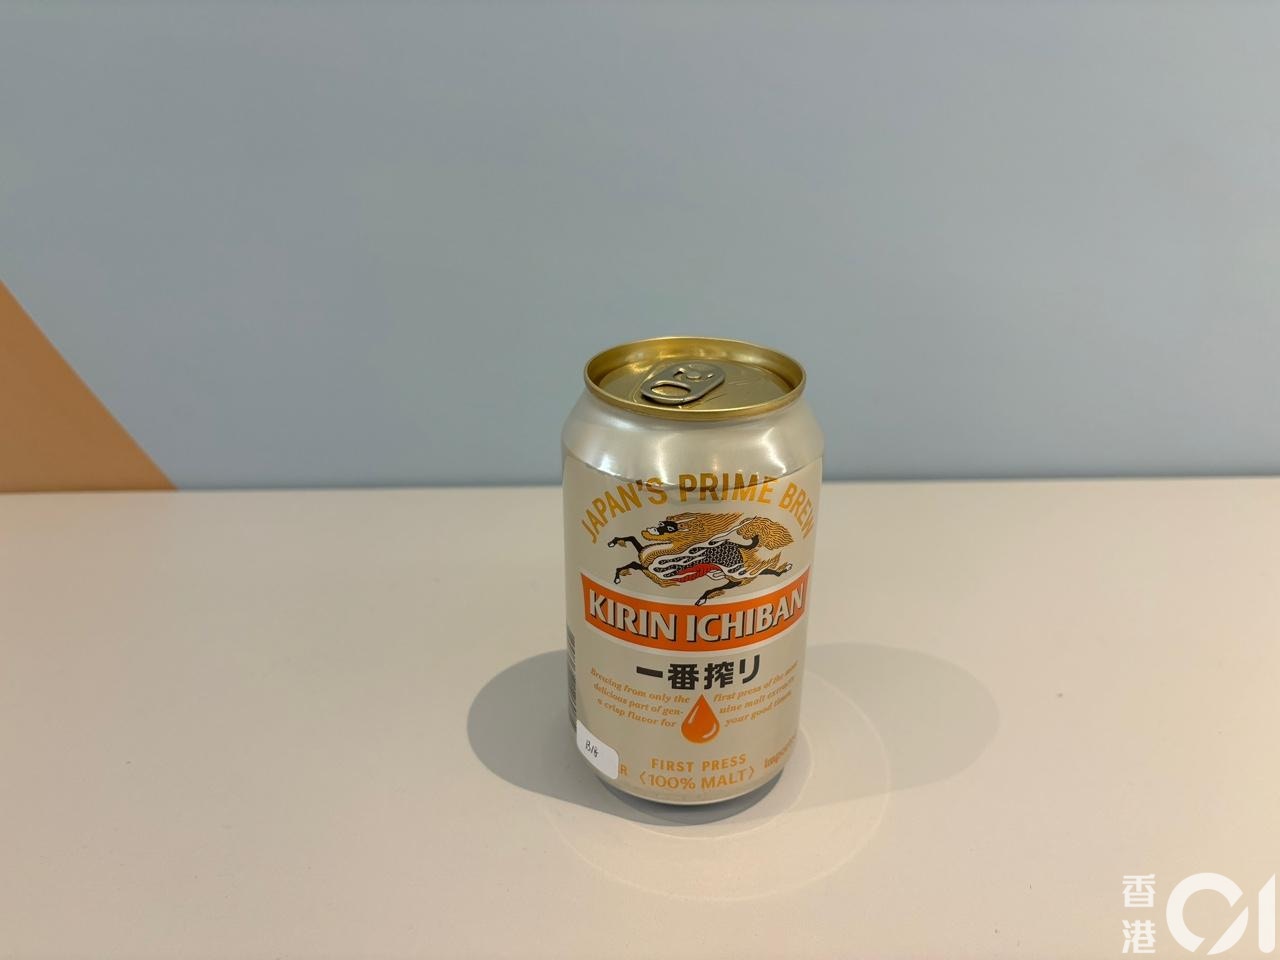 麒麟一番榨 KIRIN ICHIBAN的 麒麟啤酒 Kirin Beer，每罐$7.9，评分为4.5分。（梁祖儿摄）